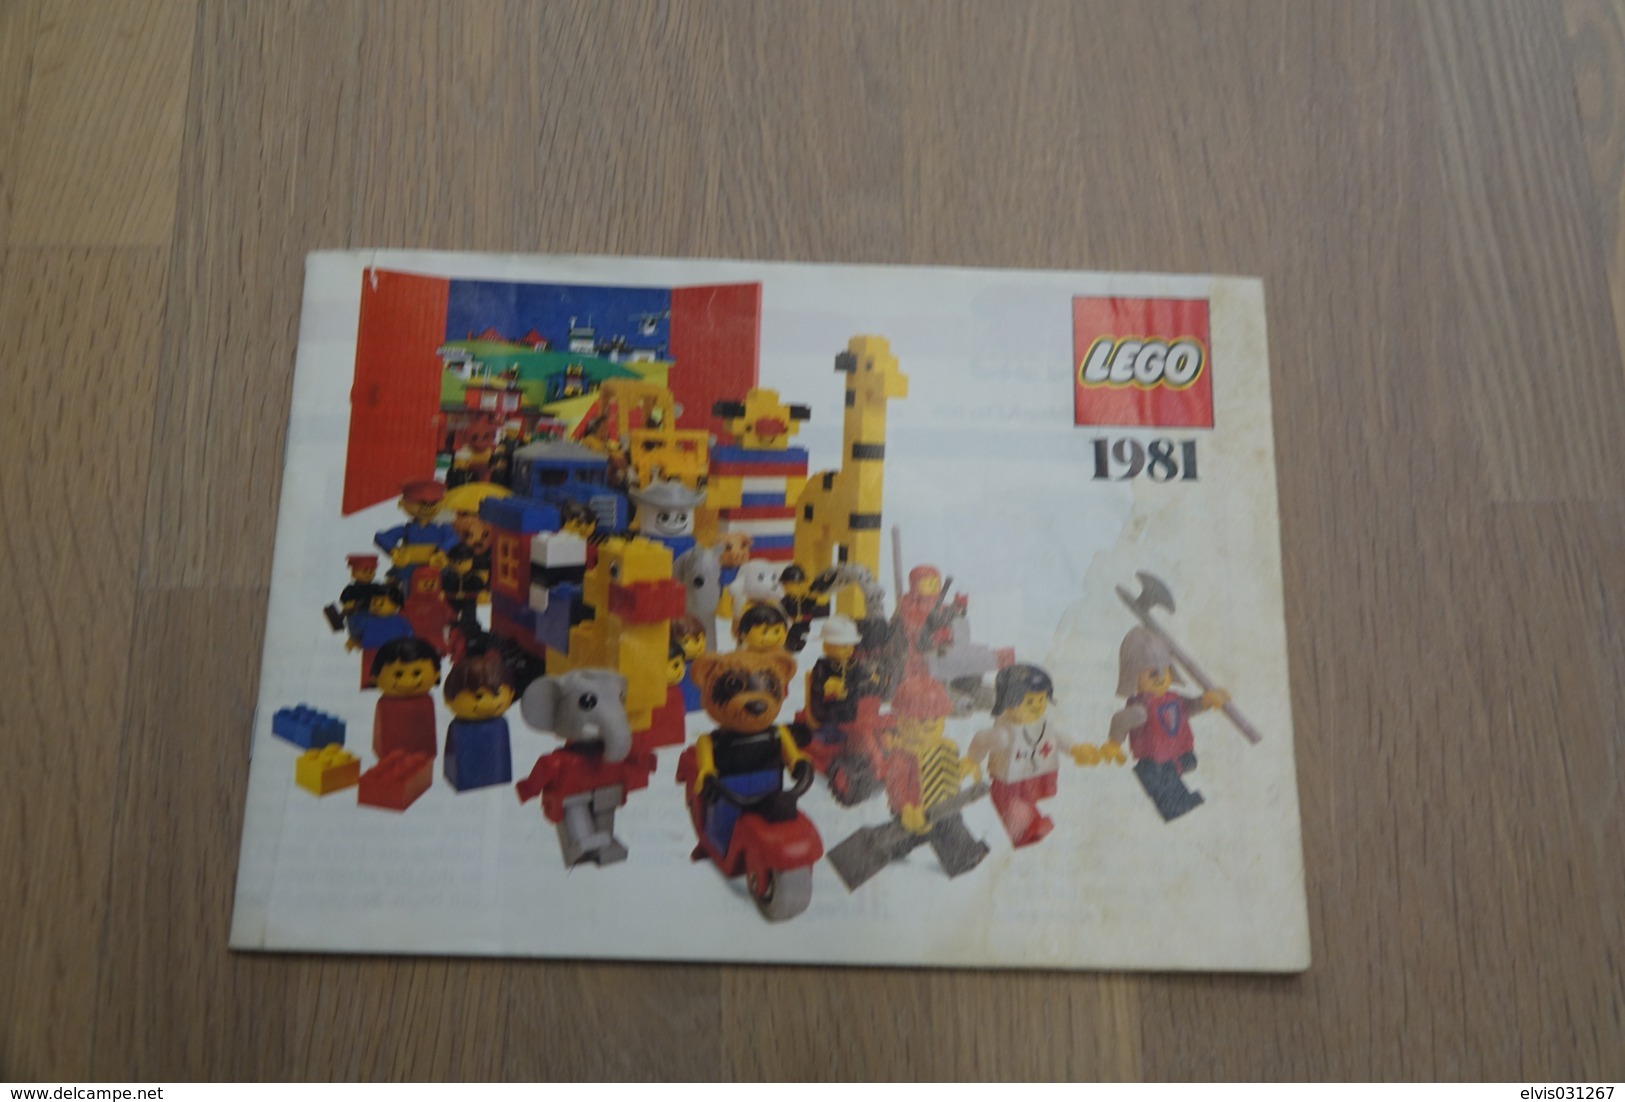 LEGO - CATALOG 1981 - Original Lego 1981 - Vintage - EN - Big - Catalogs